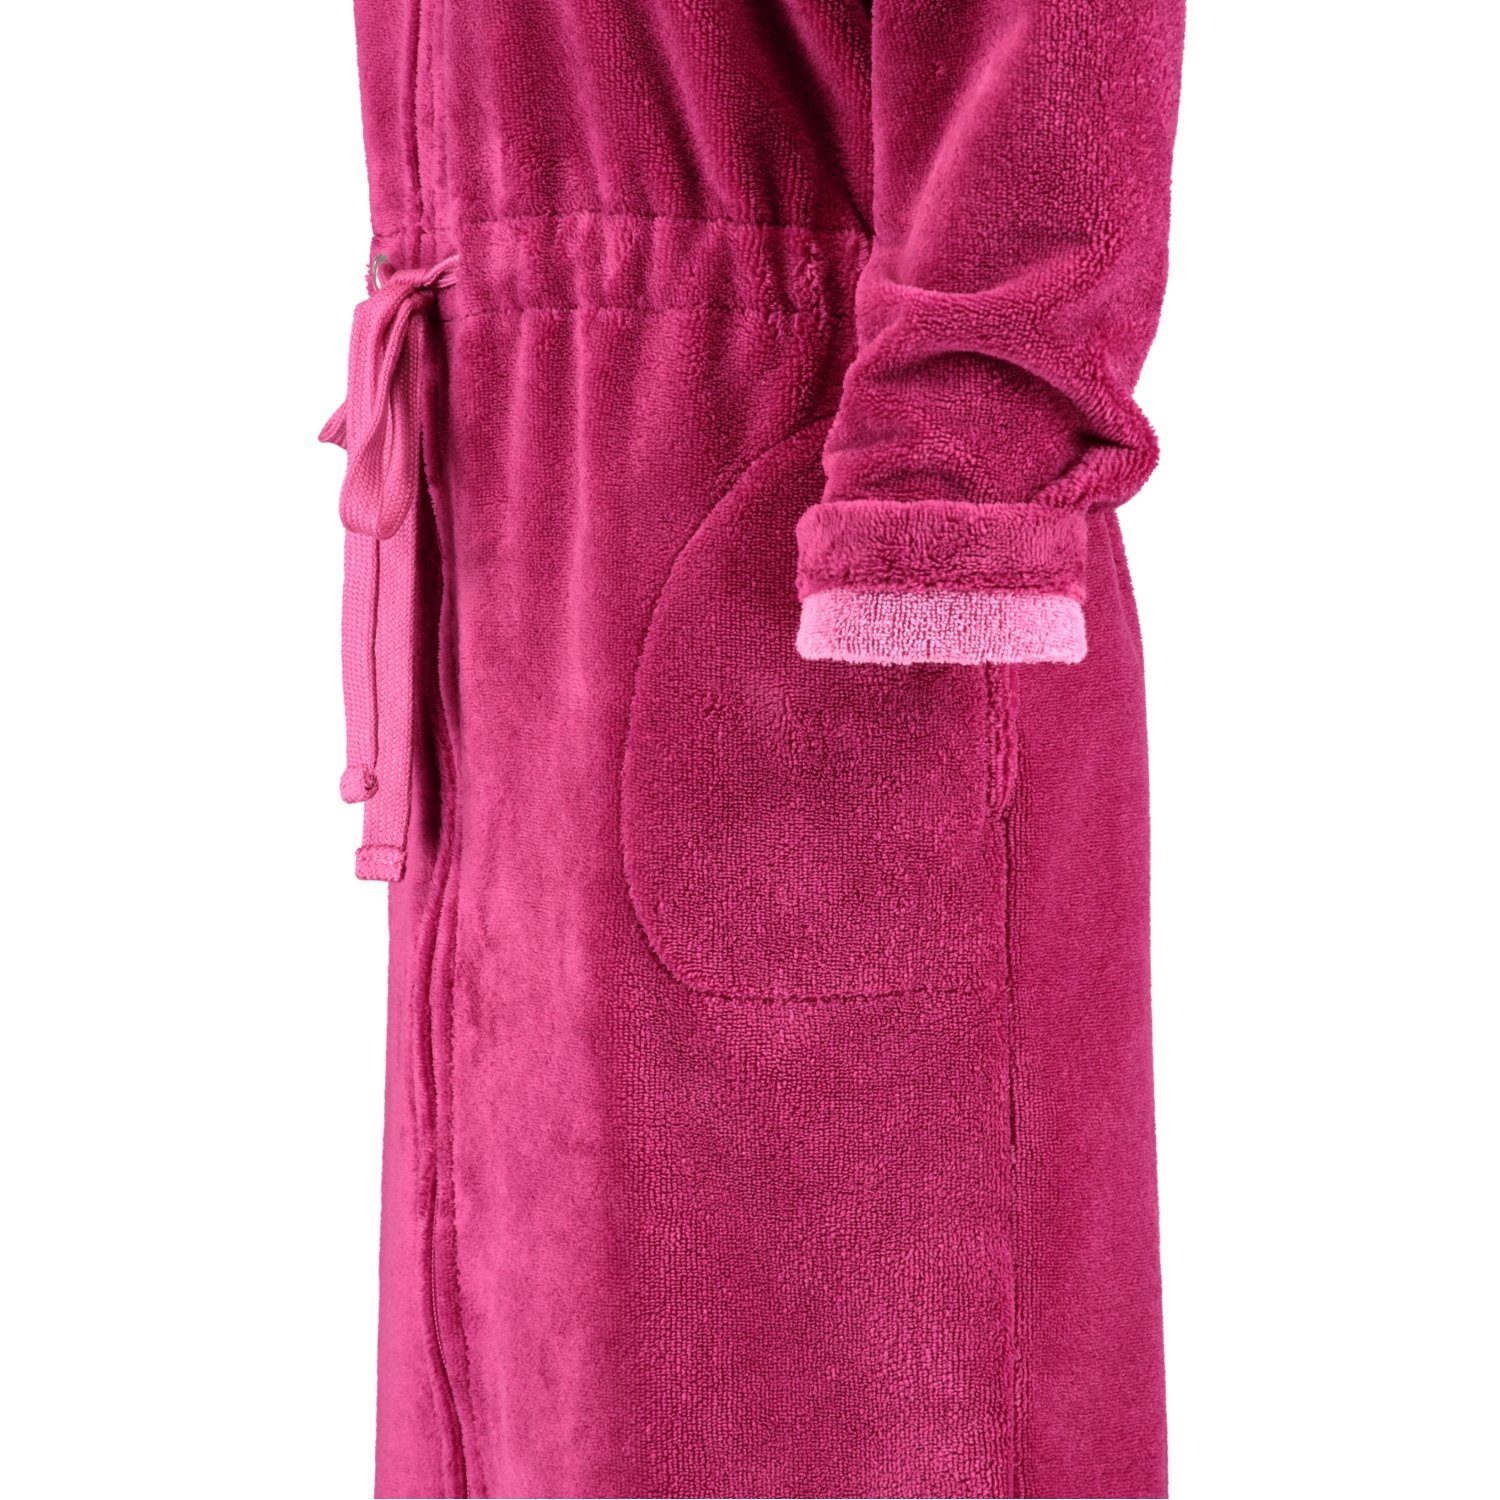 Reißverschluss 22 Reißverschluss, pink Baumwollmischung, Damenbademantel Cawö 822, Kurzform, Home Cawö